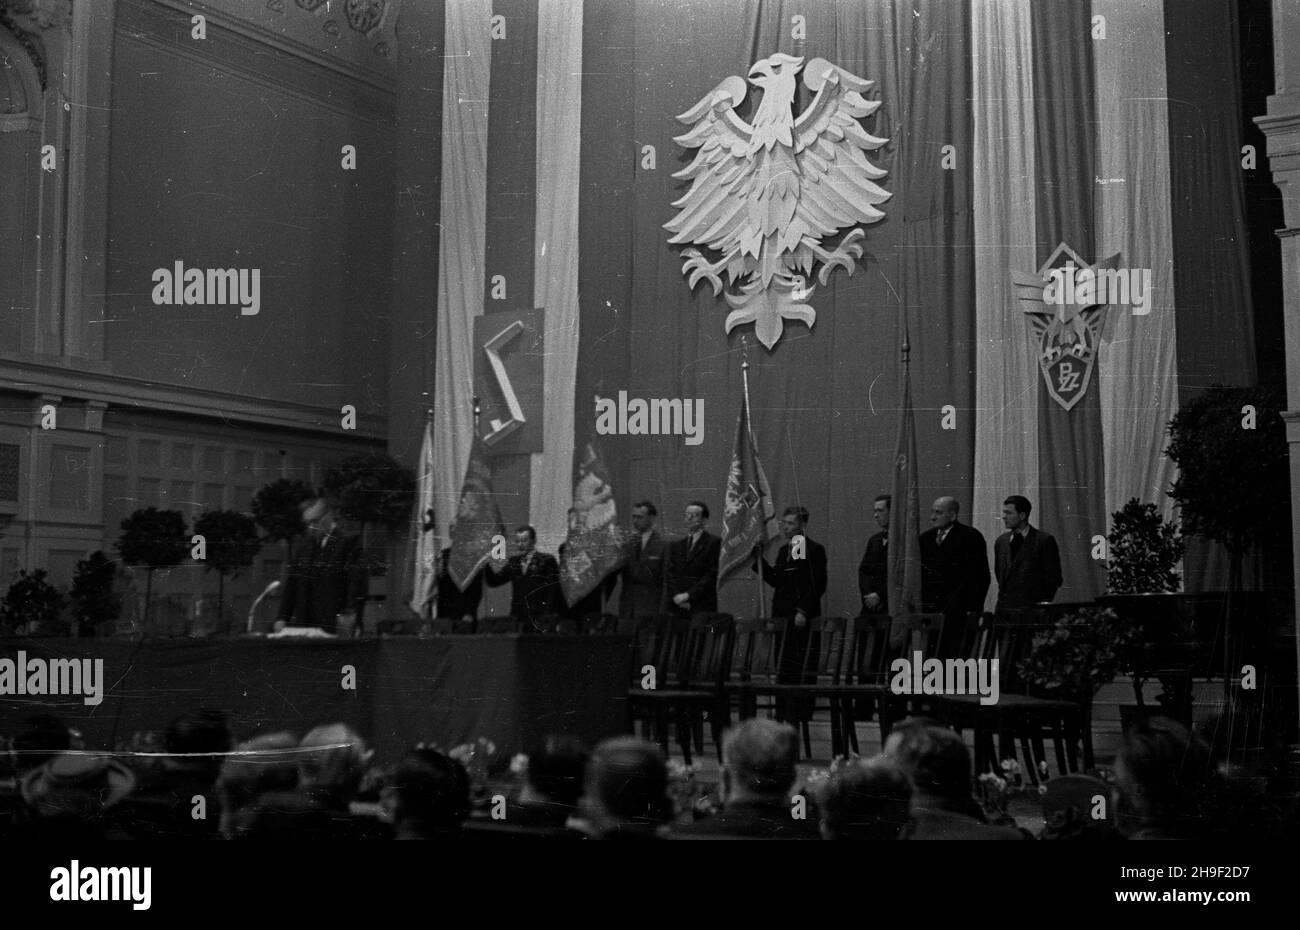 Poznañ, 1947-12-07. Pierwszy po wojnie walny zjazd delegatów Polskiego Zwi¹zku Zachodniego obraduj¹cy w auli Uniwersytetu Poznañskiego. Nz. prezydium zjazdu. Przemawia prezes PZZ, wicemarsza³ek Sejmu Wac³aw Barcikowski. po/mgs  PAP      Poznan, Dec. 7, 1947. The first after the war congress of the delegates of Polish Western Union (PZZ) held at Poznan University. Pictured: the seering committee. PZZ leader, deputy Sejm Speaker Waclaw Barcikowski speaking.   po/mgs  PAP Stock Photo